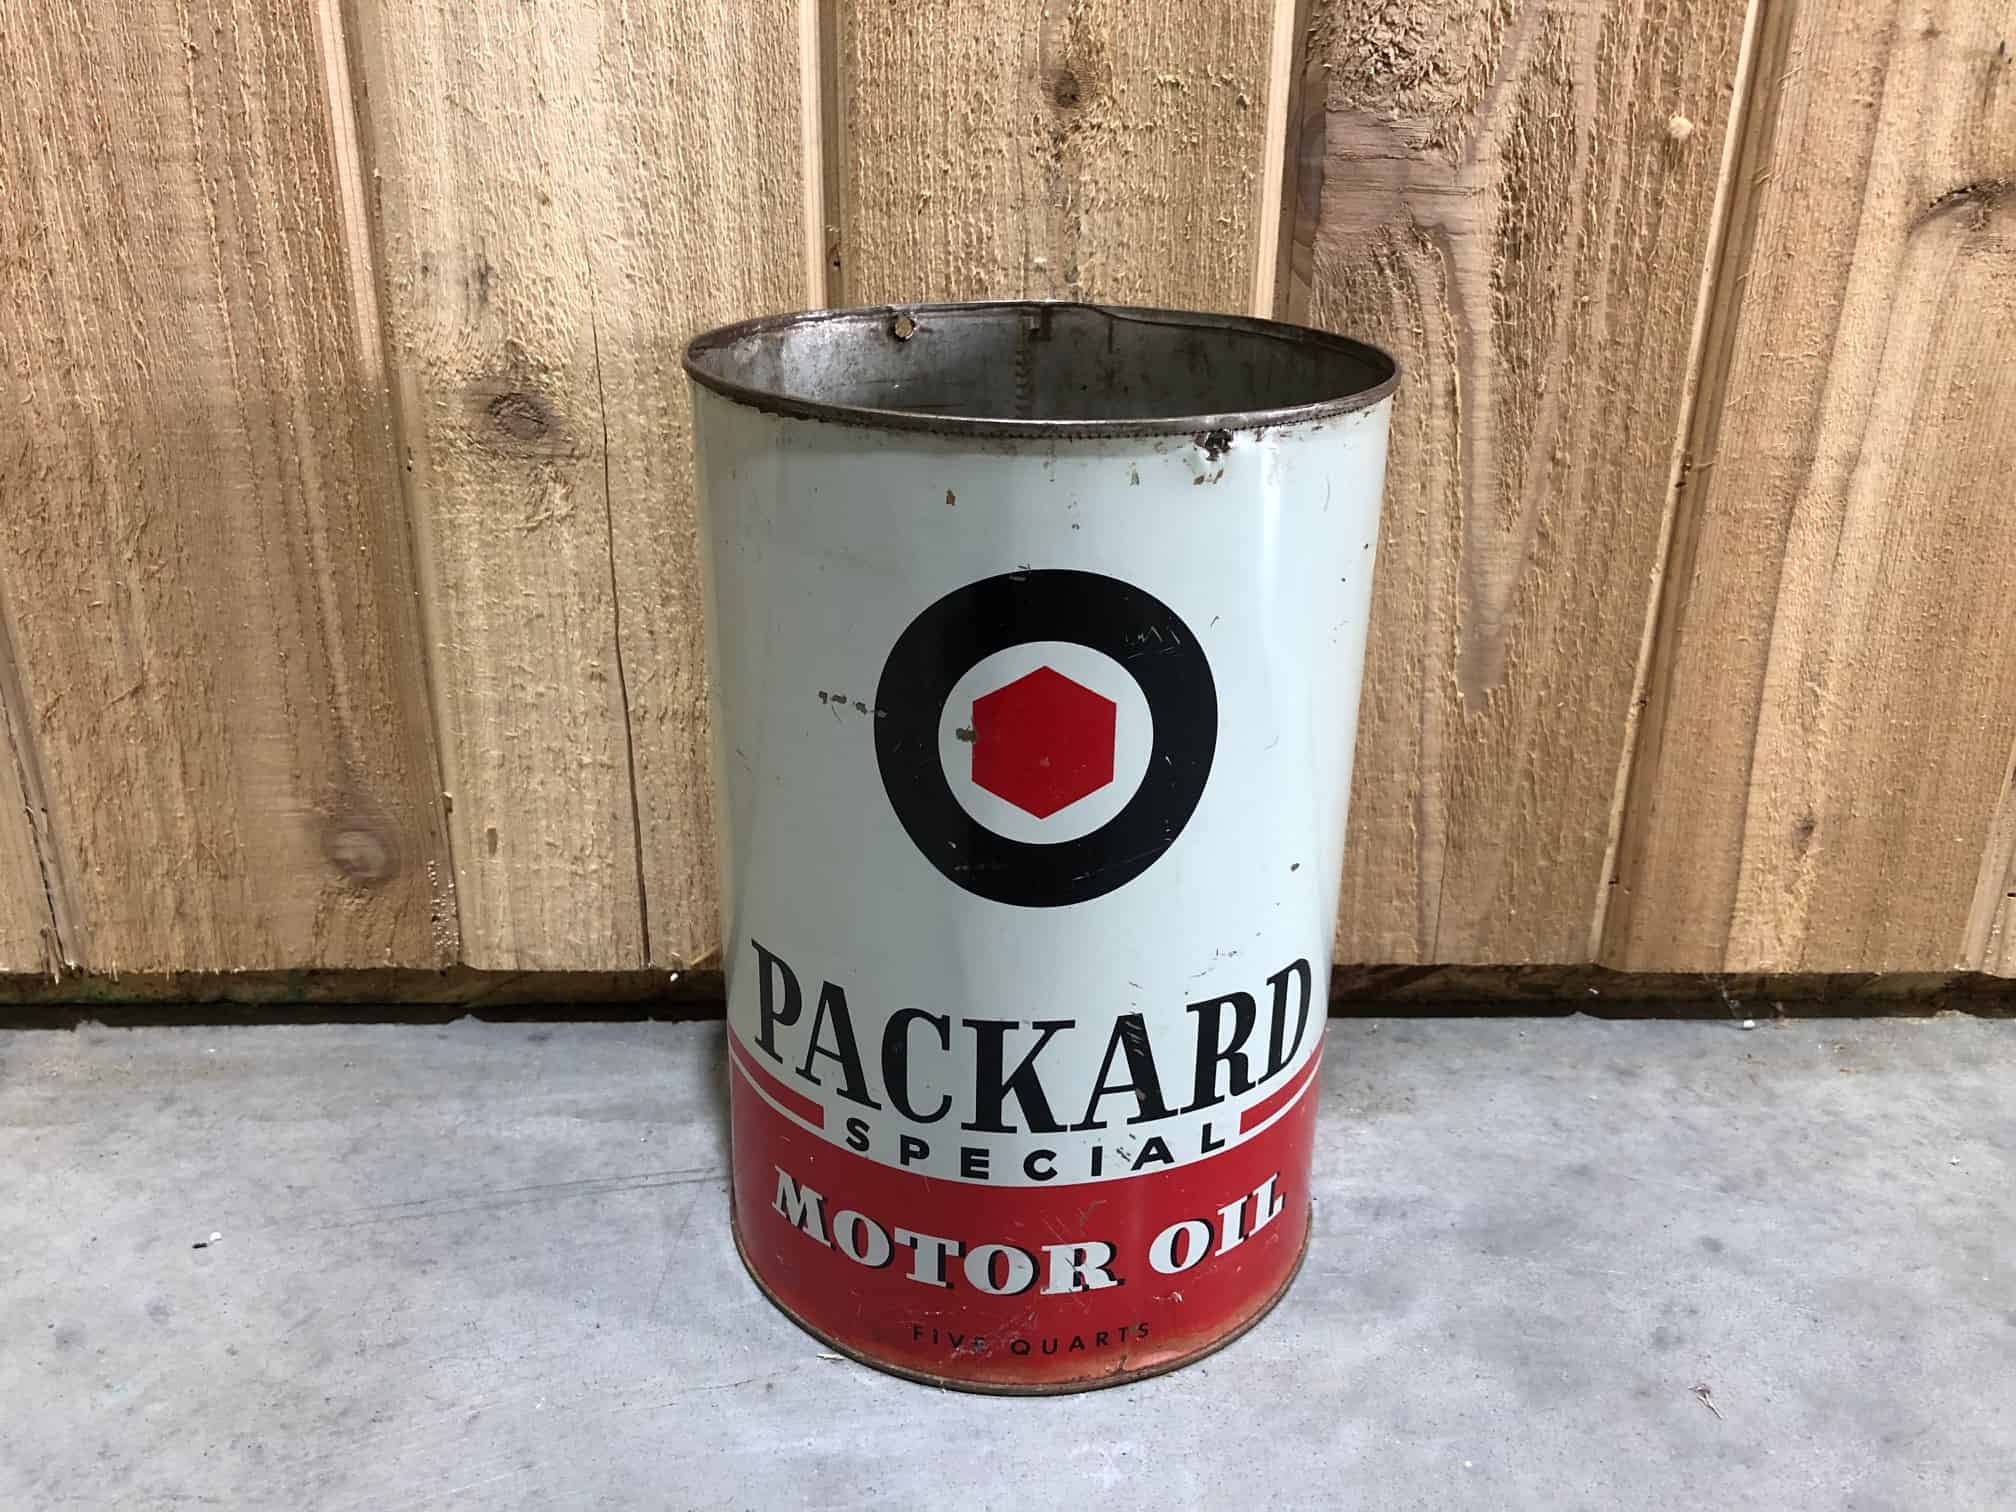 Packard Motor Oil 5 Qt Can